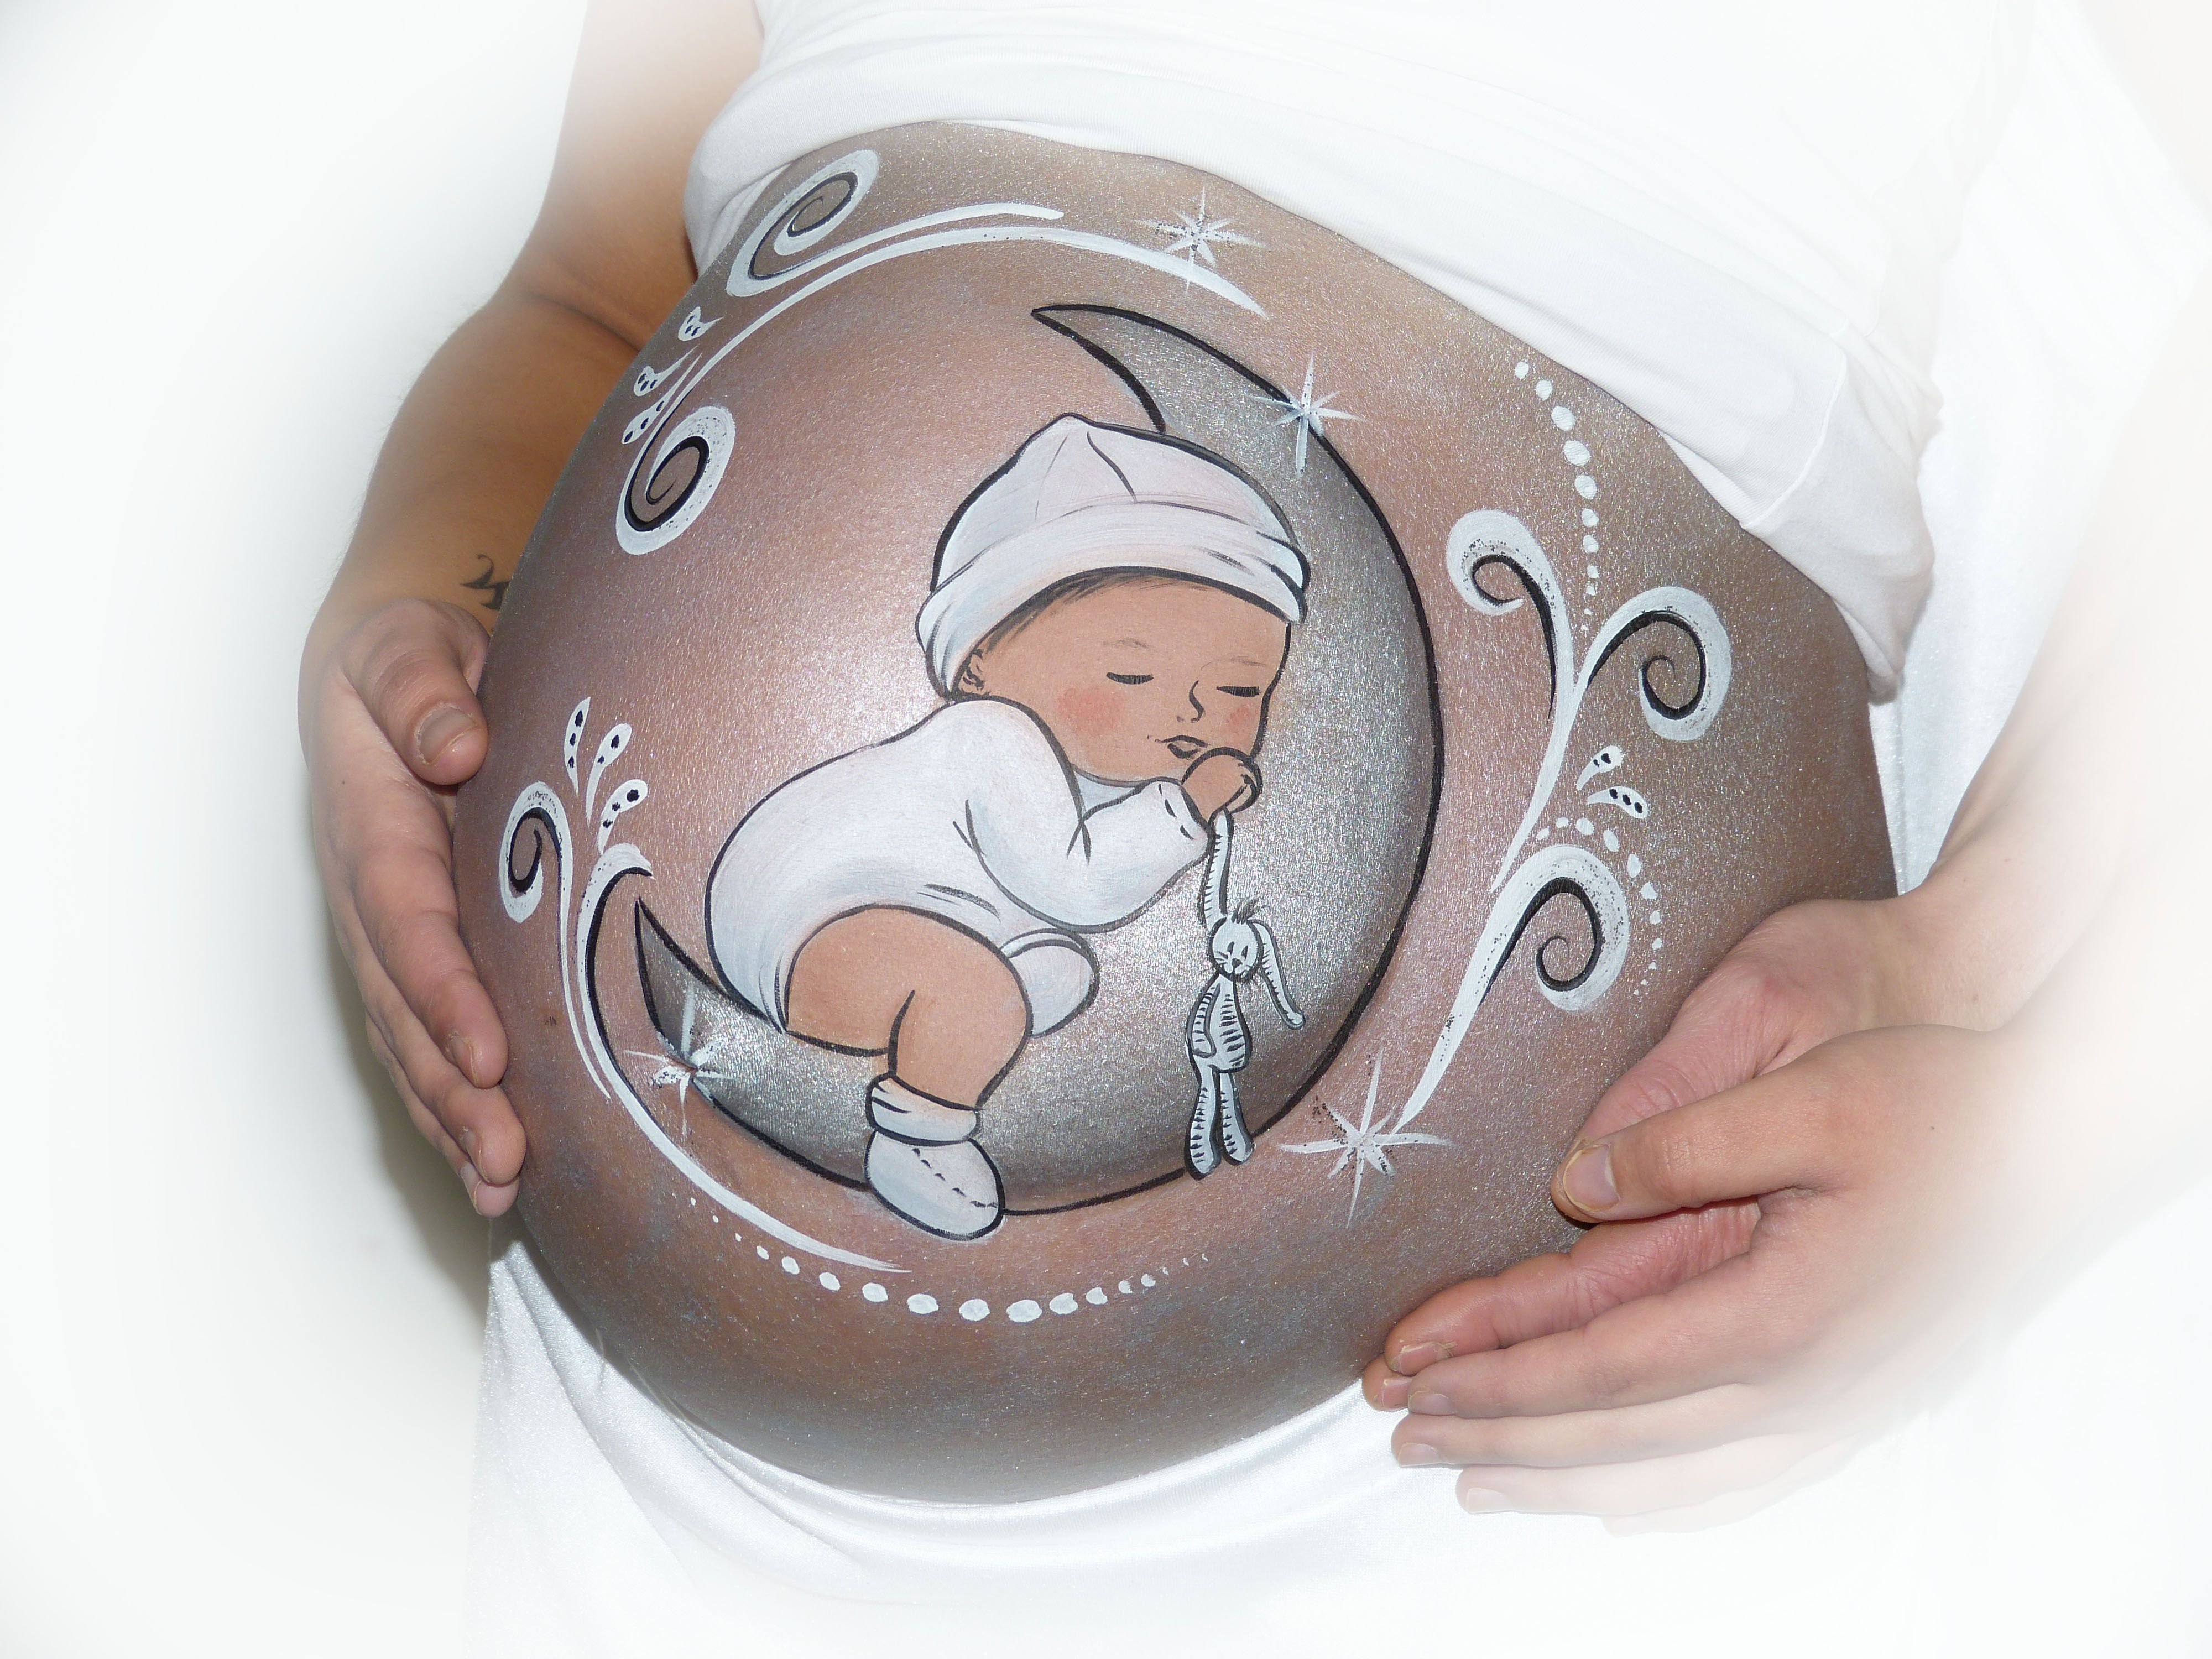 Музыка малышу в животике слушать. Разрисованные животики беременных. Рисование на животе беременных. Рисунки на животе у беременных. Рисунки на беременных животиках.